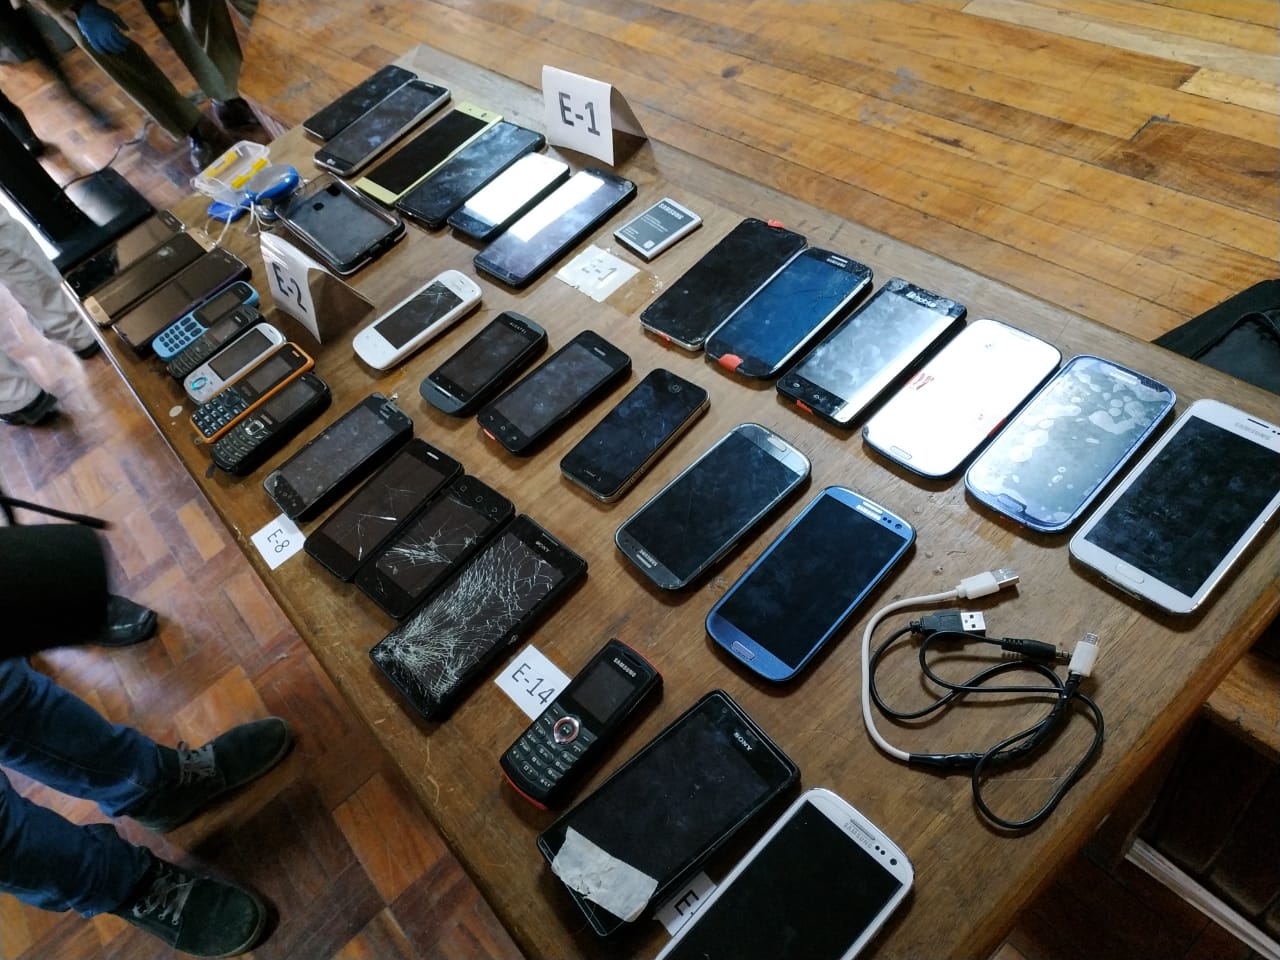 Más de 30 celulares y smartphones fueron recuperados en el famoso mercado negro paceño / ÁNGEL SALAZAR